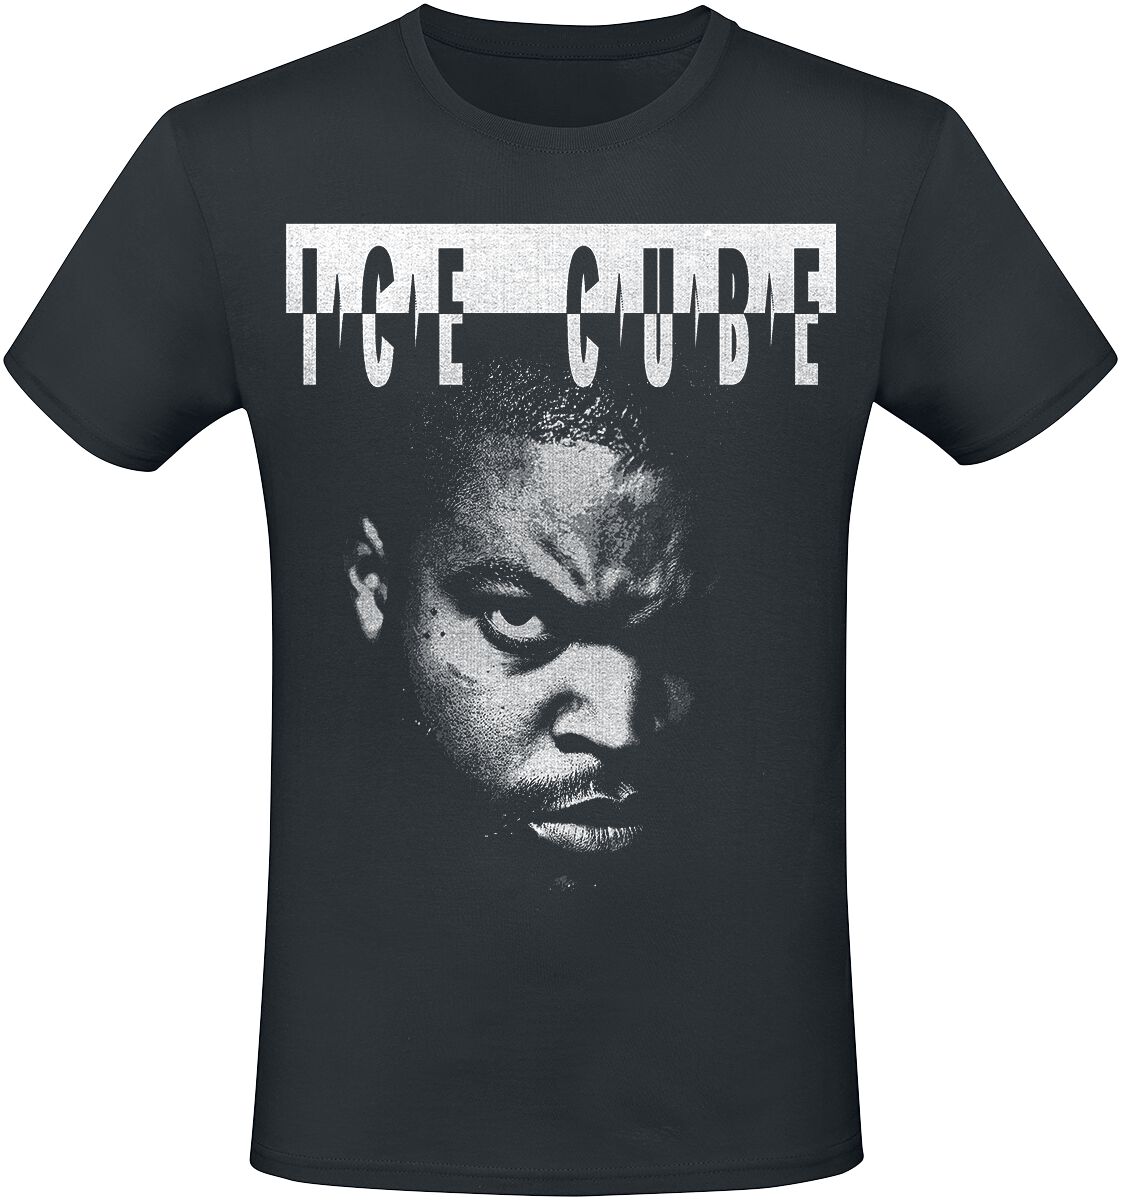 T-Shirt Manches courtes de Ice Cube - Photo - S à 3XL - pour Homme - noir